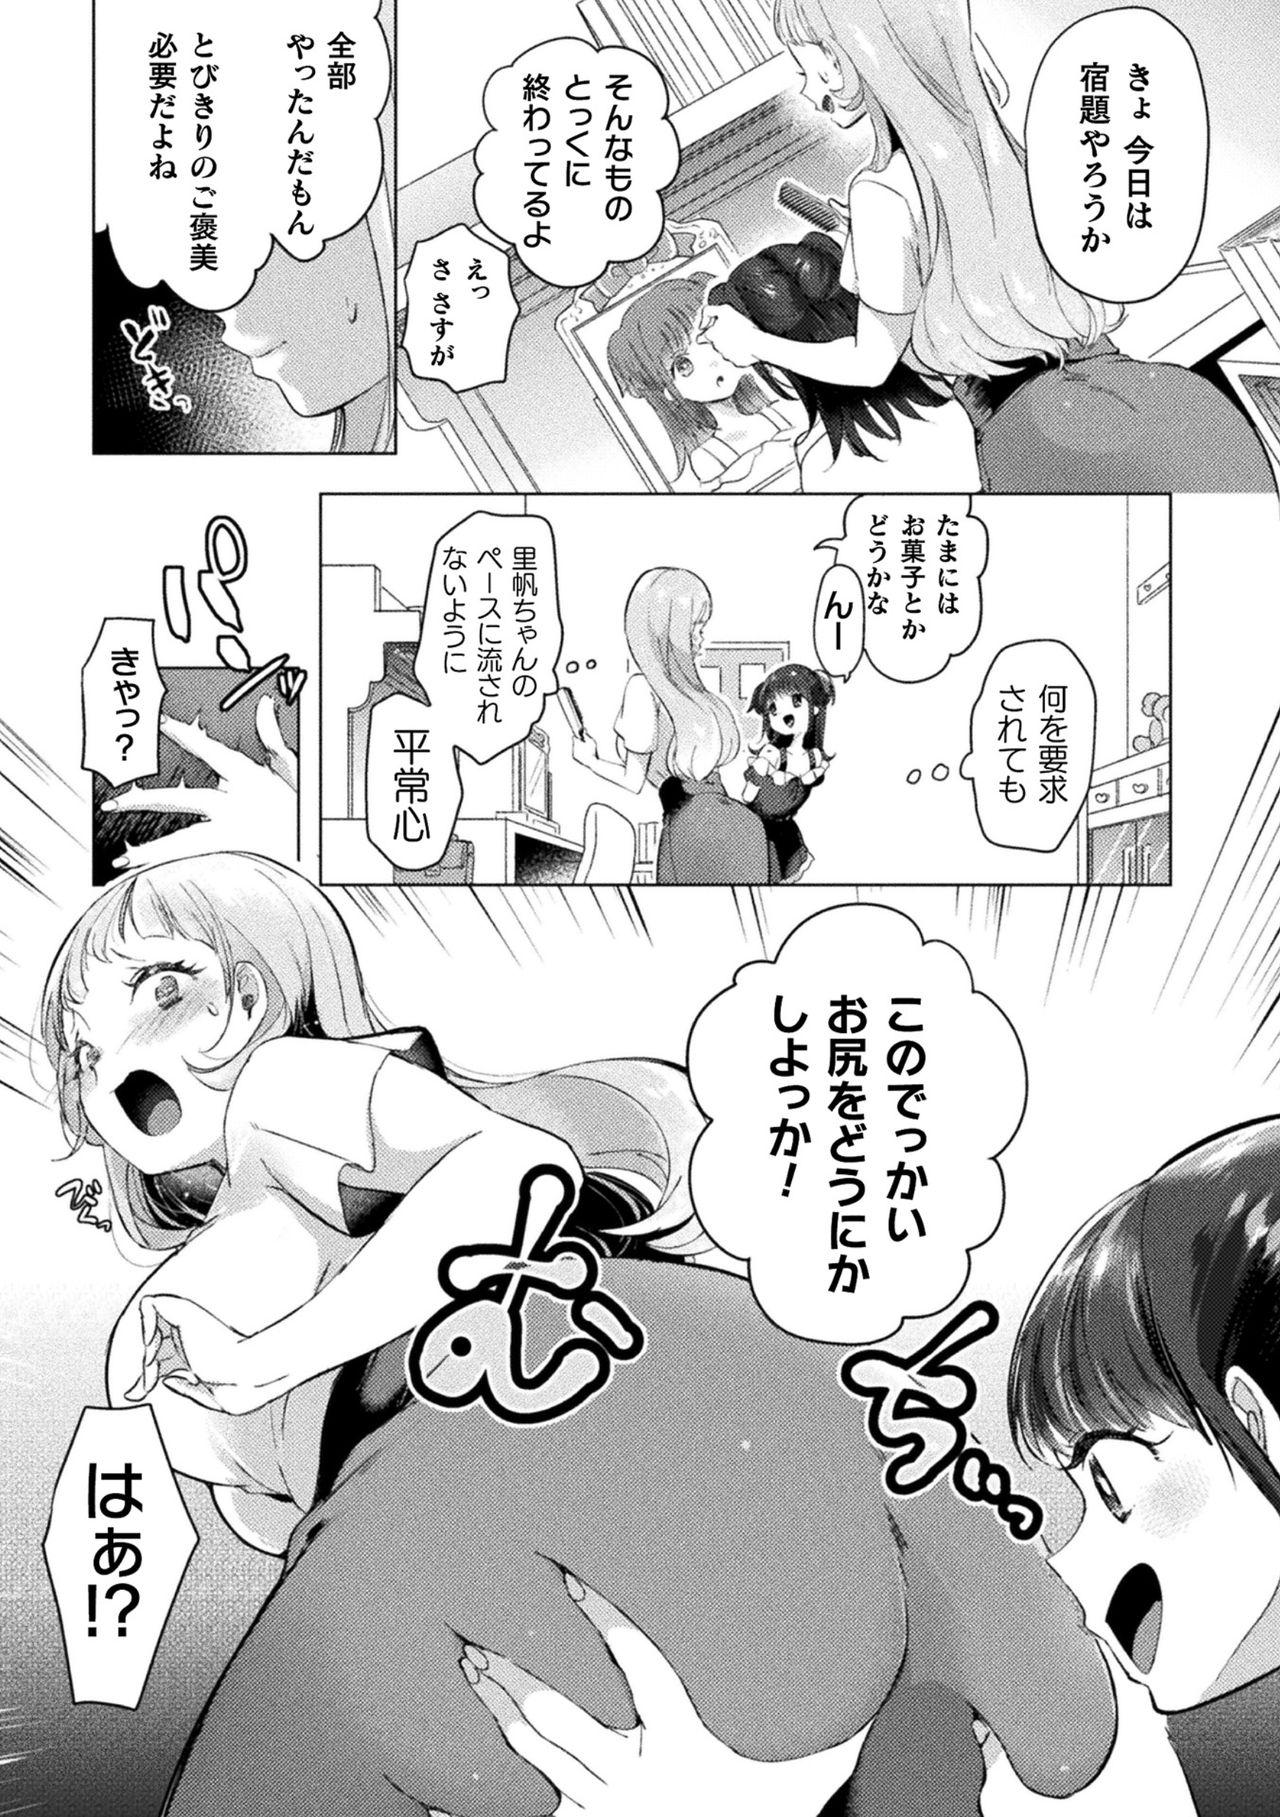 2D Comic Magazine Mesugaki vs Yasashii Onee-san Vol. 1 38